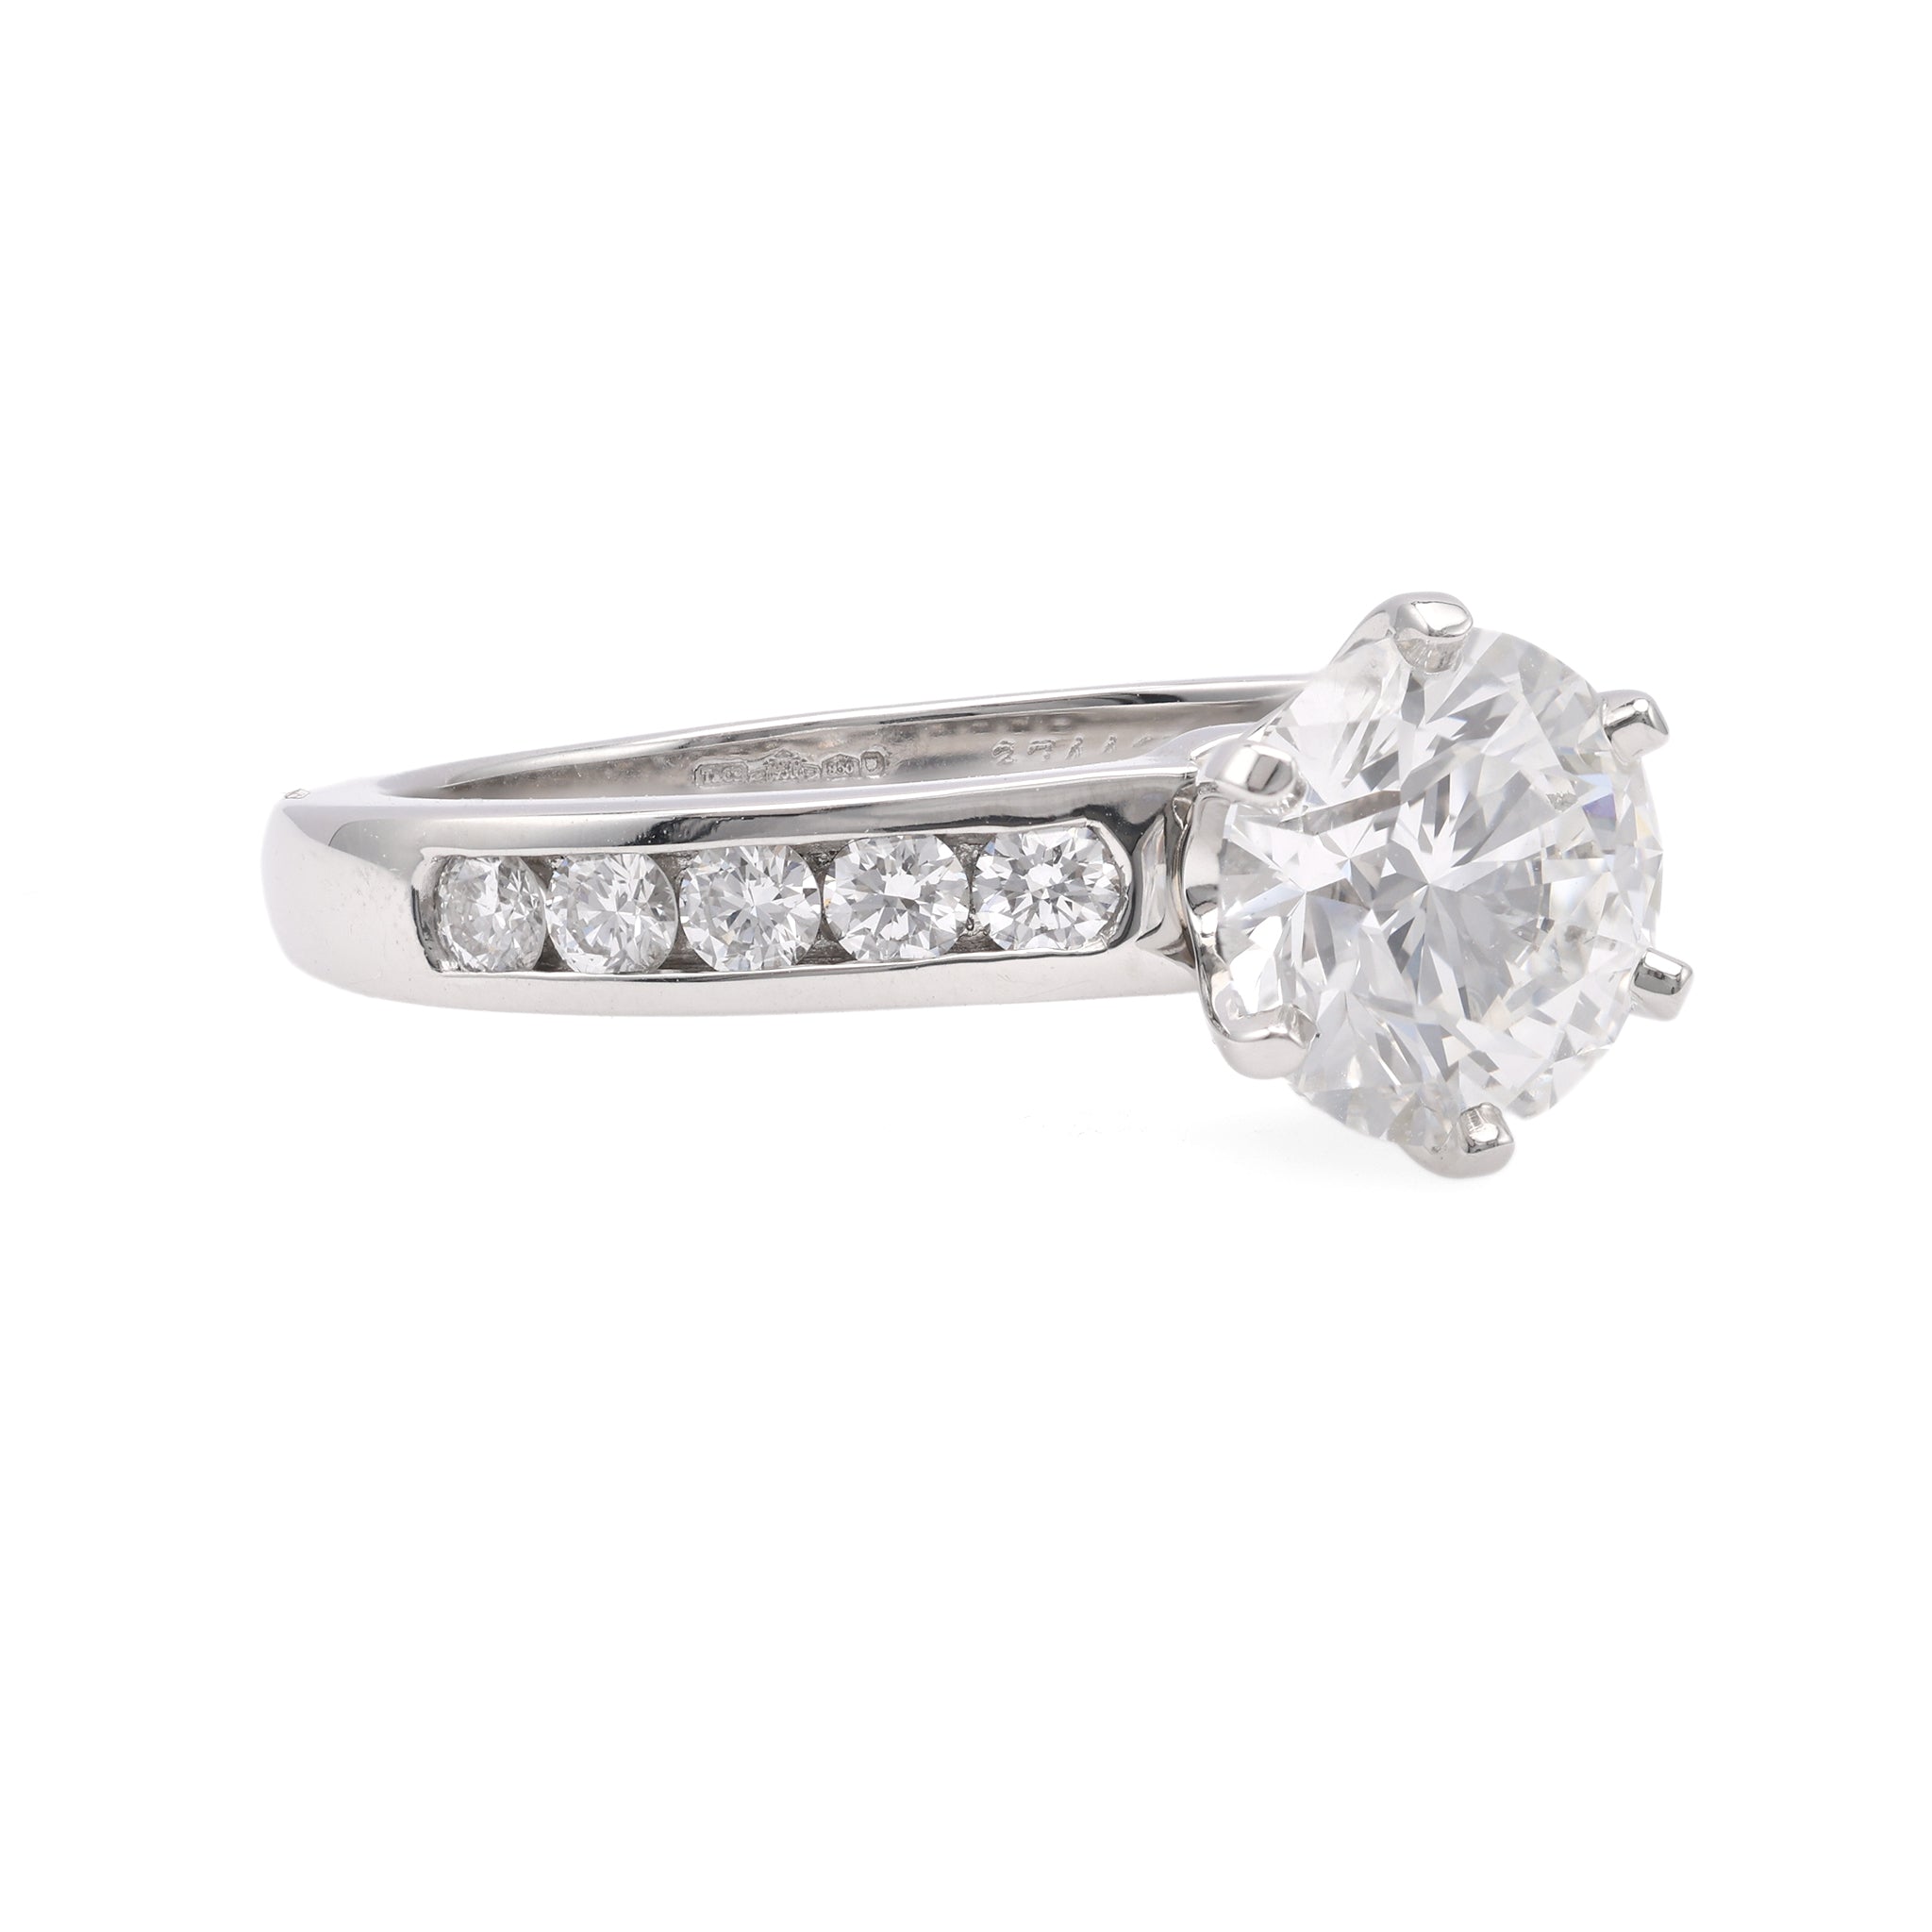 Tiffany & Co. 1.59 Carat Round Brilliant Cut Diamond Platinum Ring